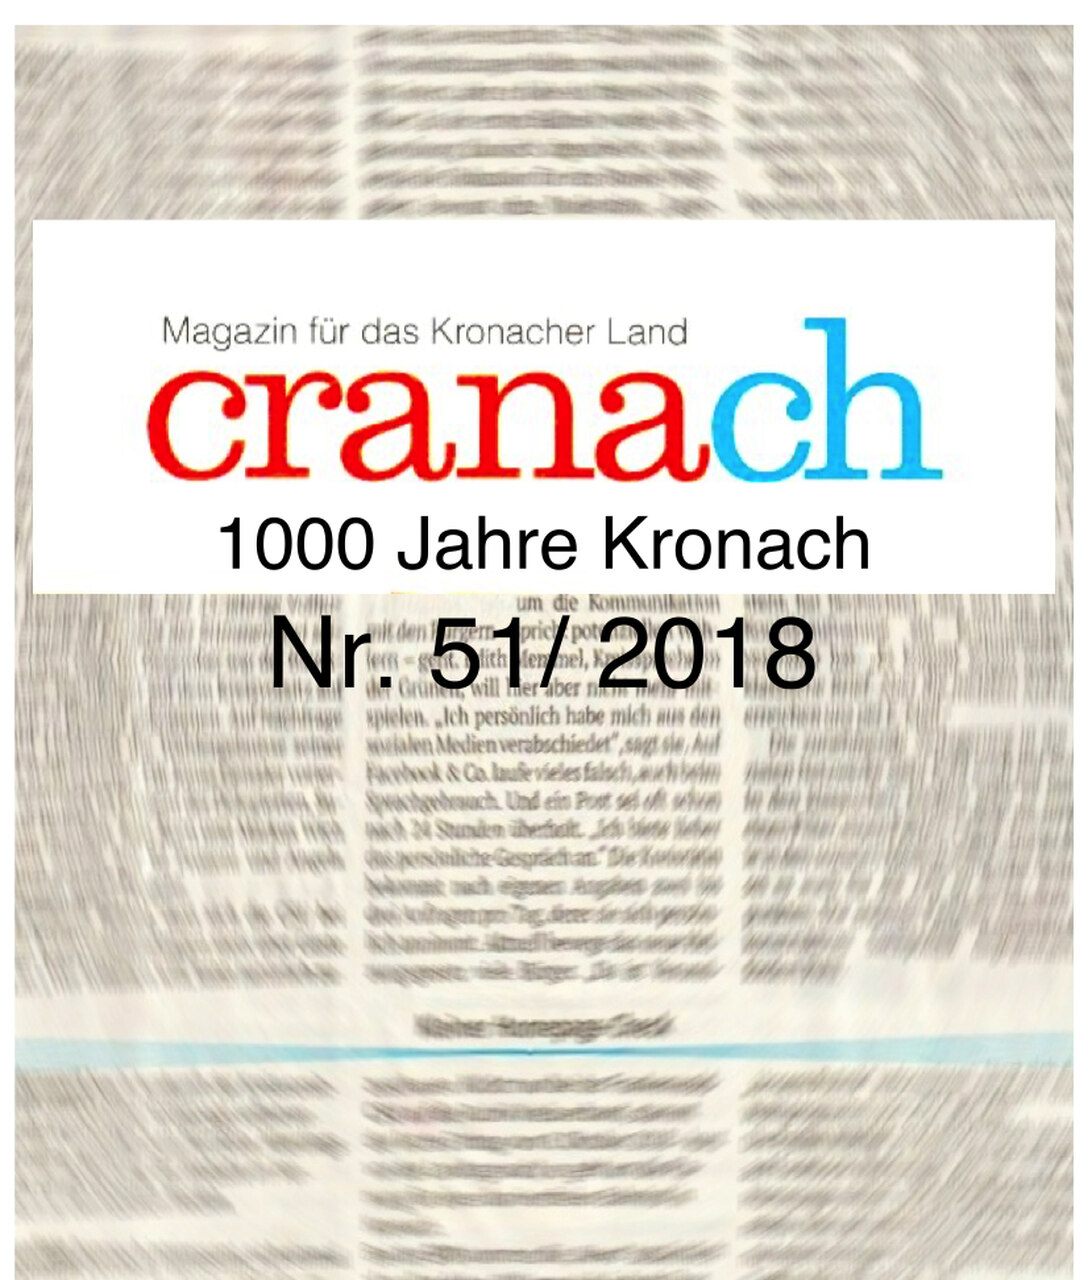 Crana-chZeitschrift, 1000 Jahre Kronach, 2017